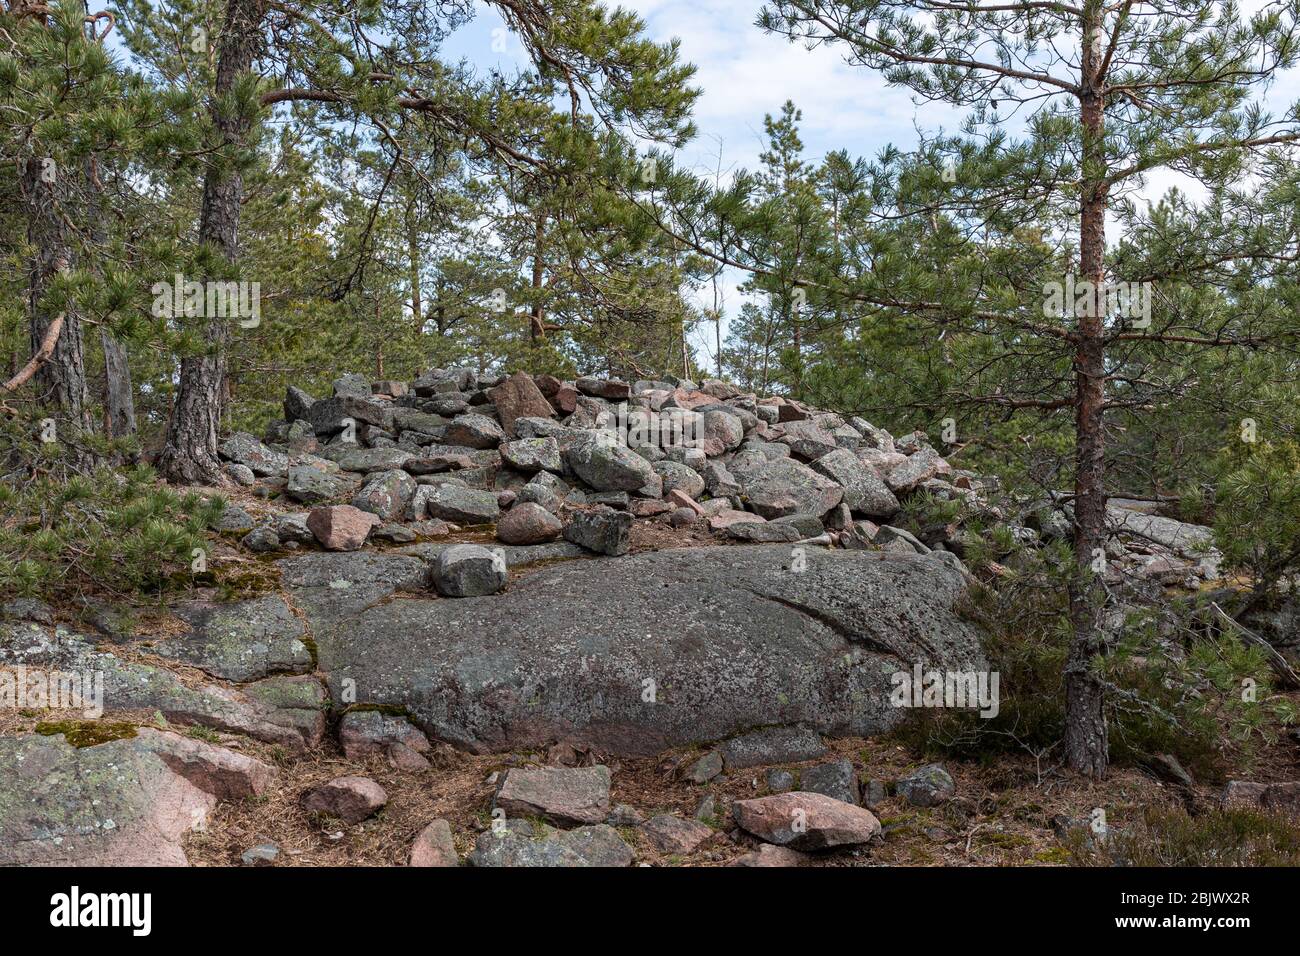 Hiidenkiuas, prähistorisches Kairngrab, entlang des Hanikka-Wanderweges in Espoo, Finnland Stockfoto